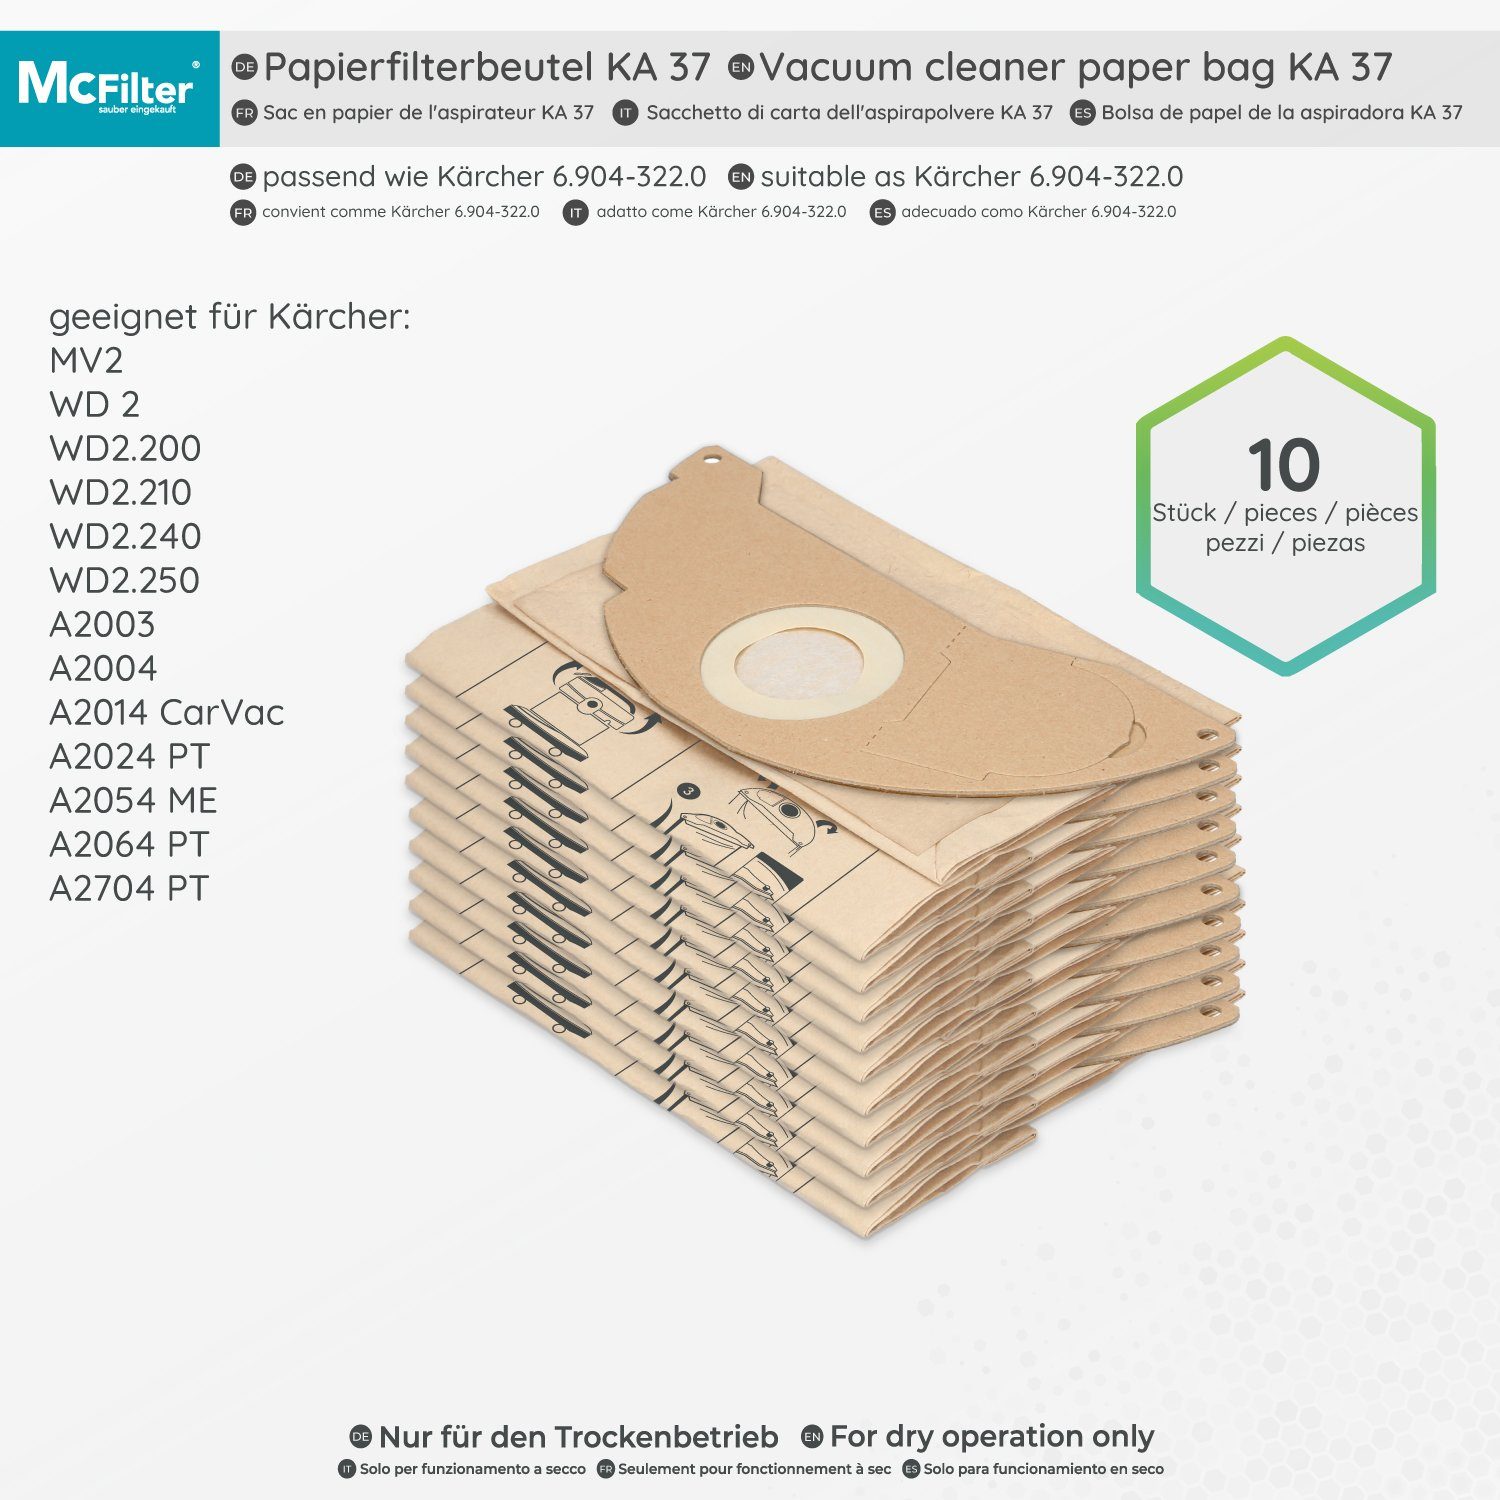 A2014 CarVac, + 2014 Hohe 2-lagig passend für Deckscheibe, (10 11 St., Stück) Formstabile Reißfestigkeit, Kärcher McFilter A Filter, 1 Staubsaugerbeutel